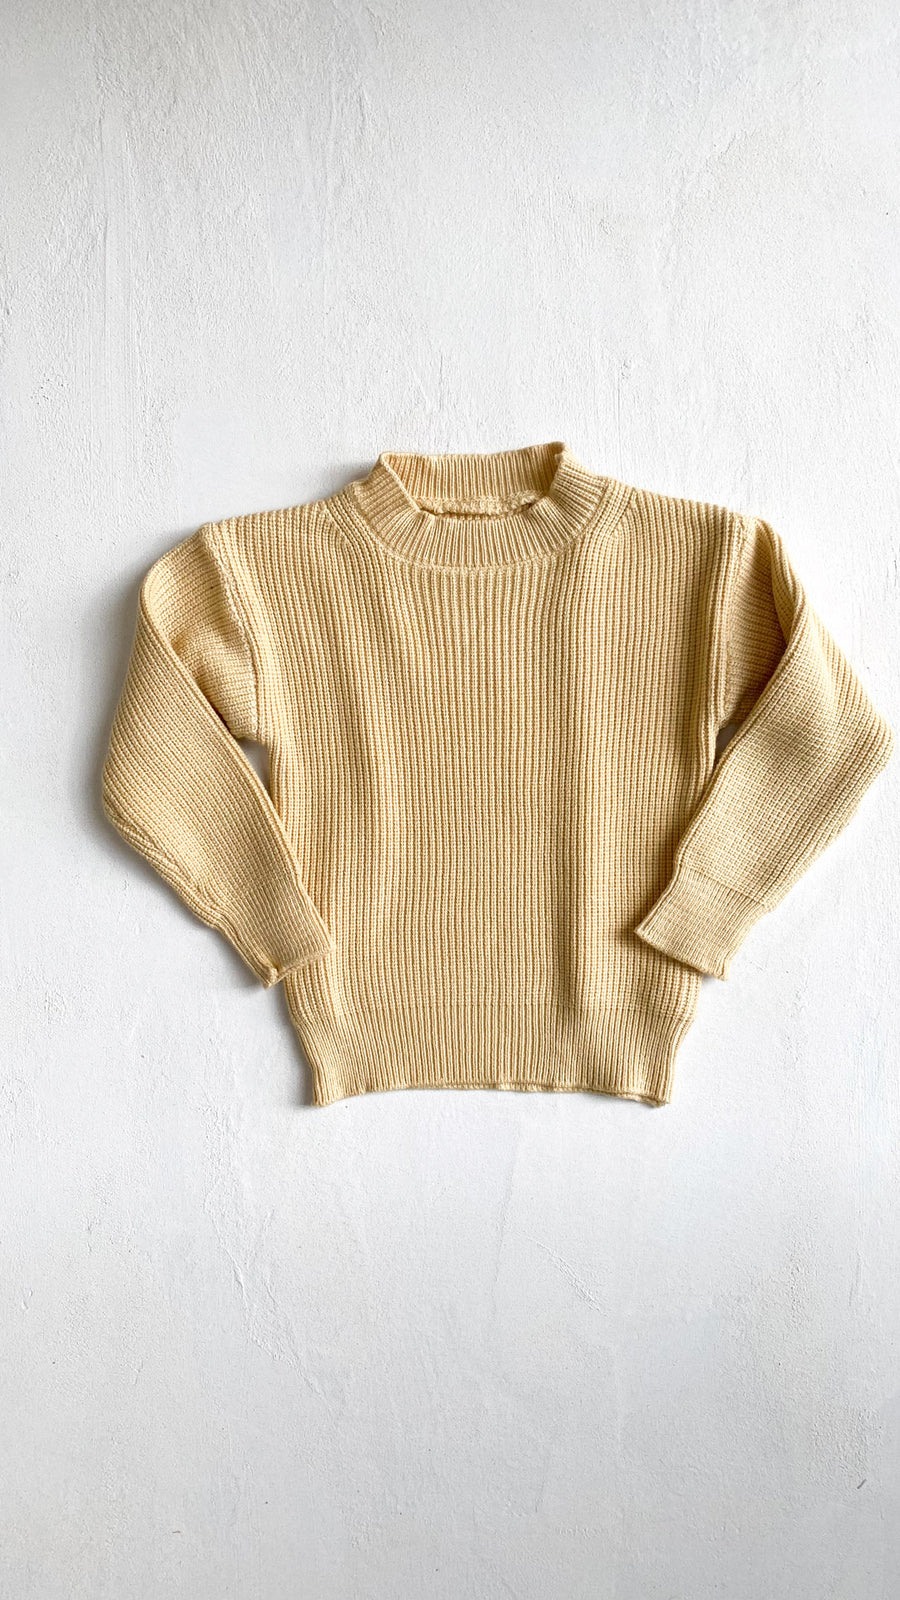 Nouri knit sweater